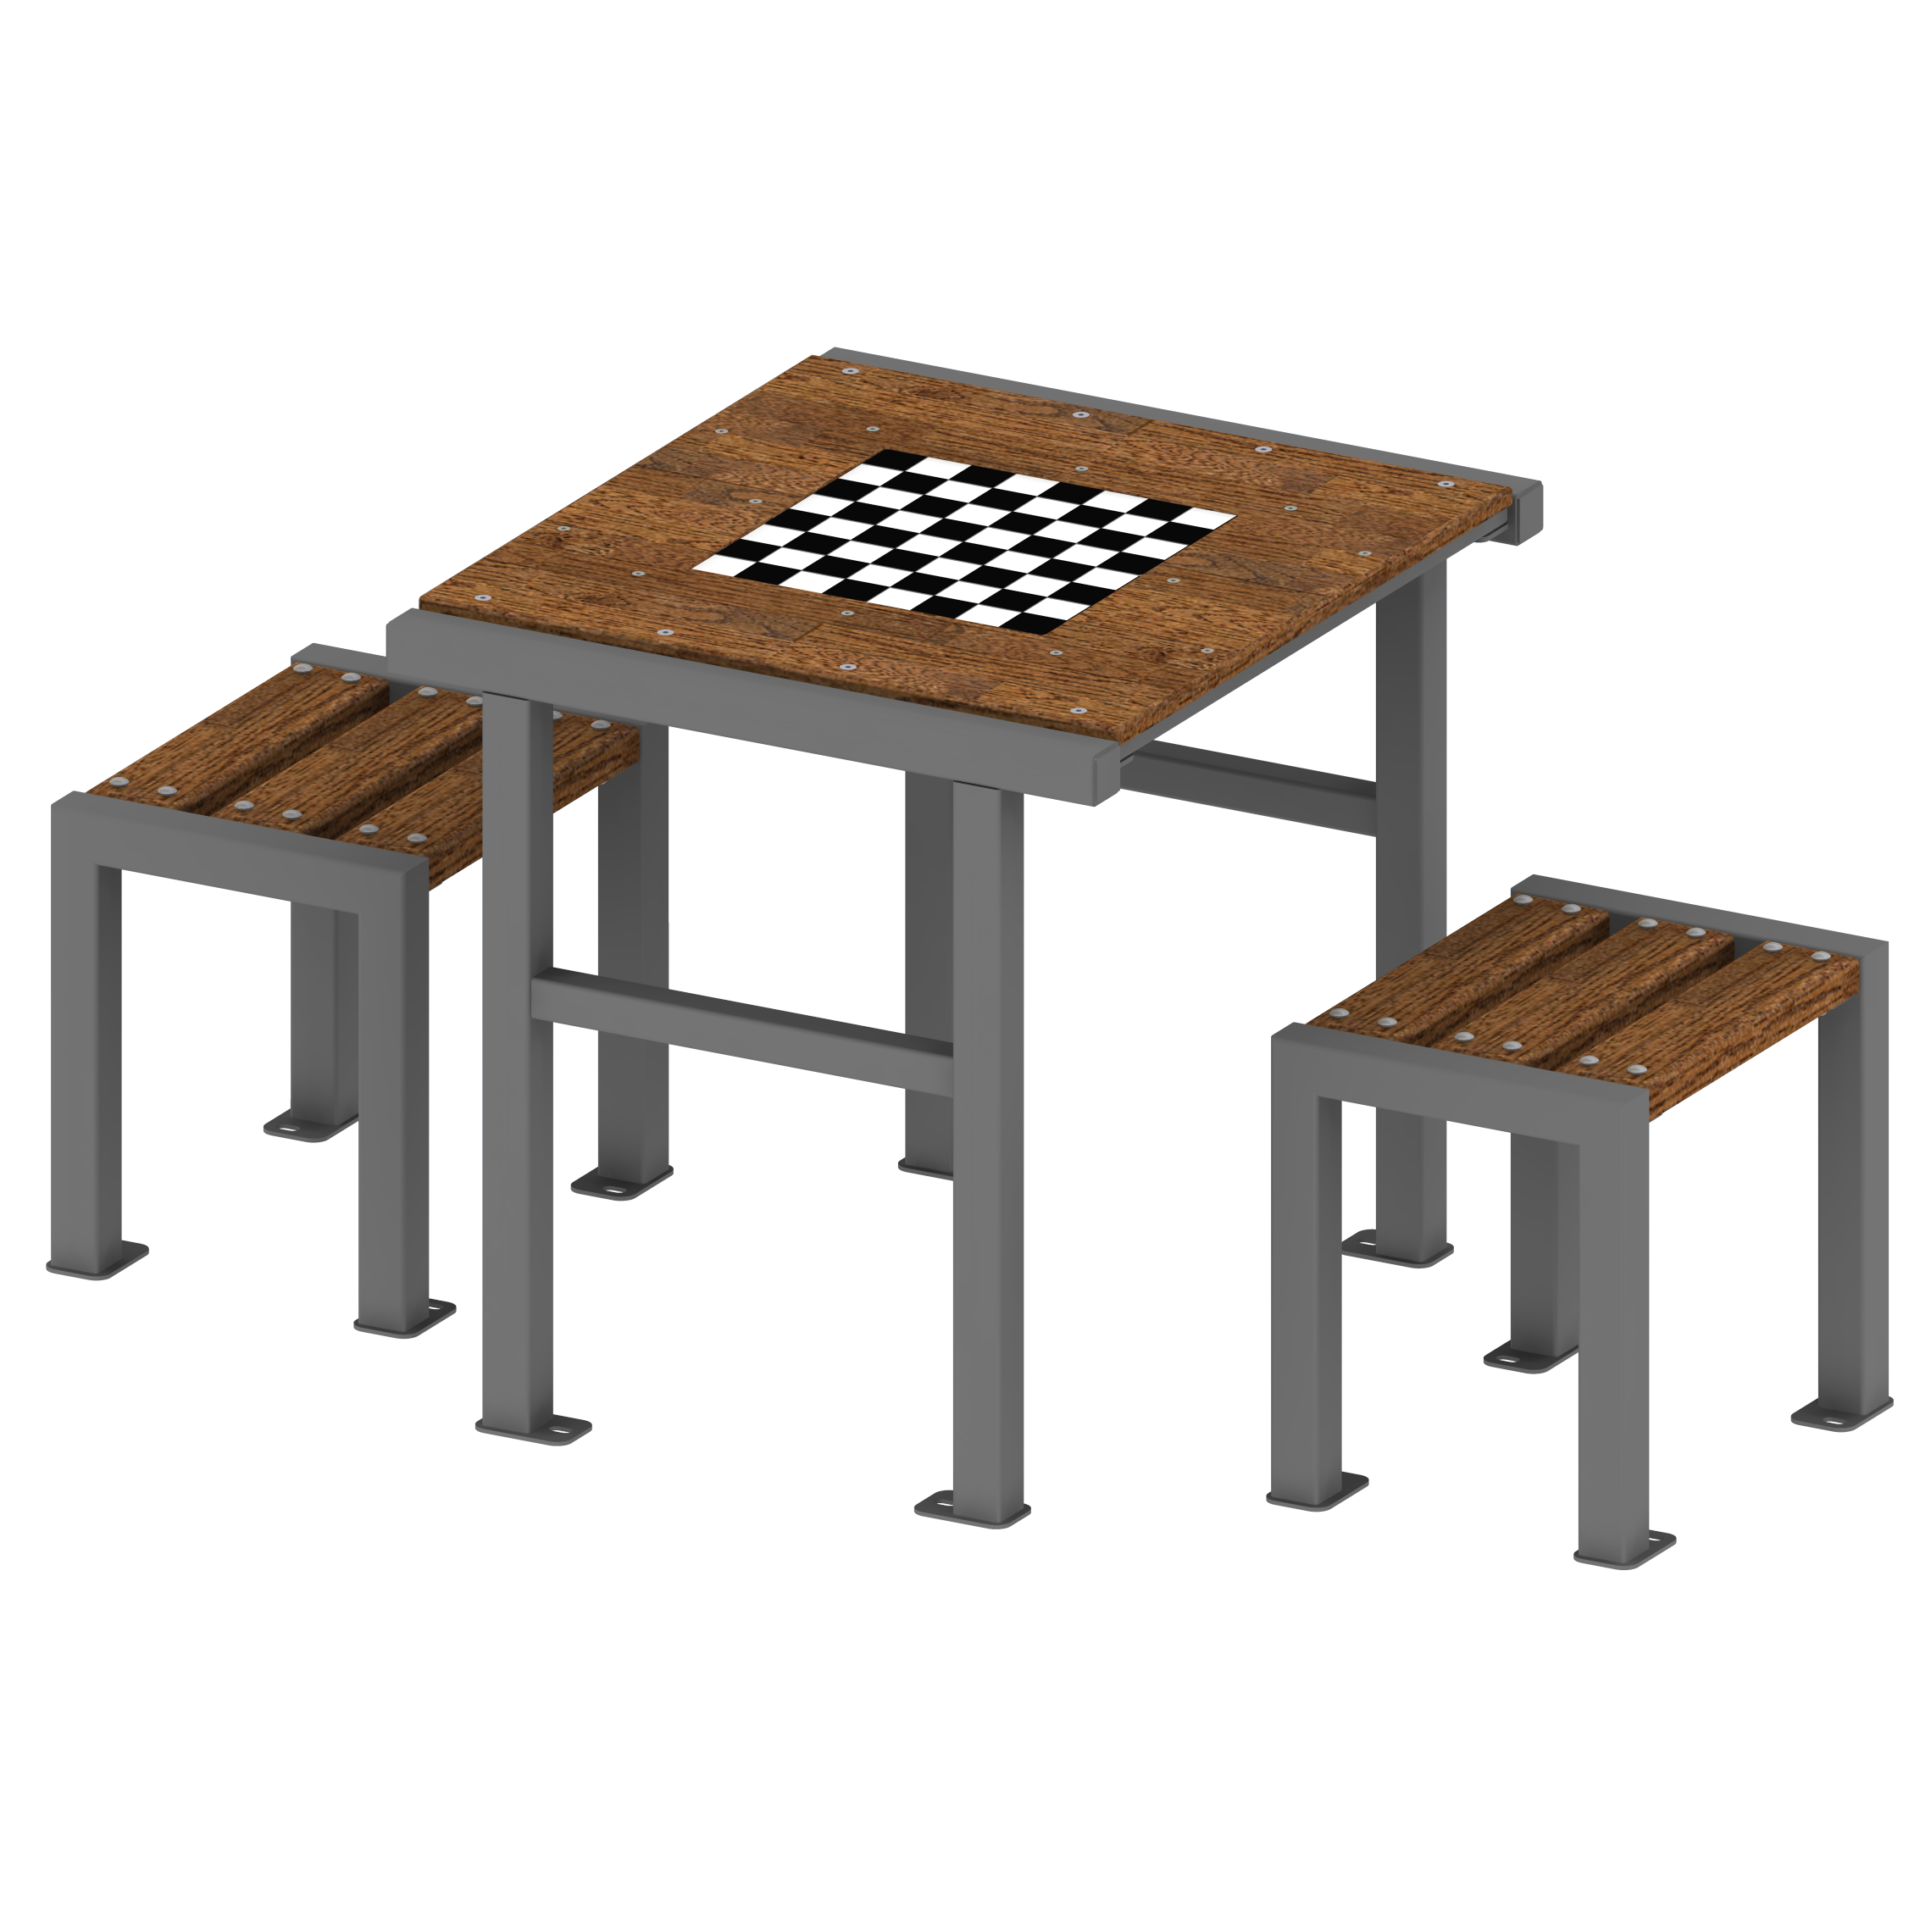 stół z ławkami senior 2. Urban furniture. Rekreacja na świeżym powietrzu.